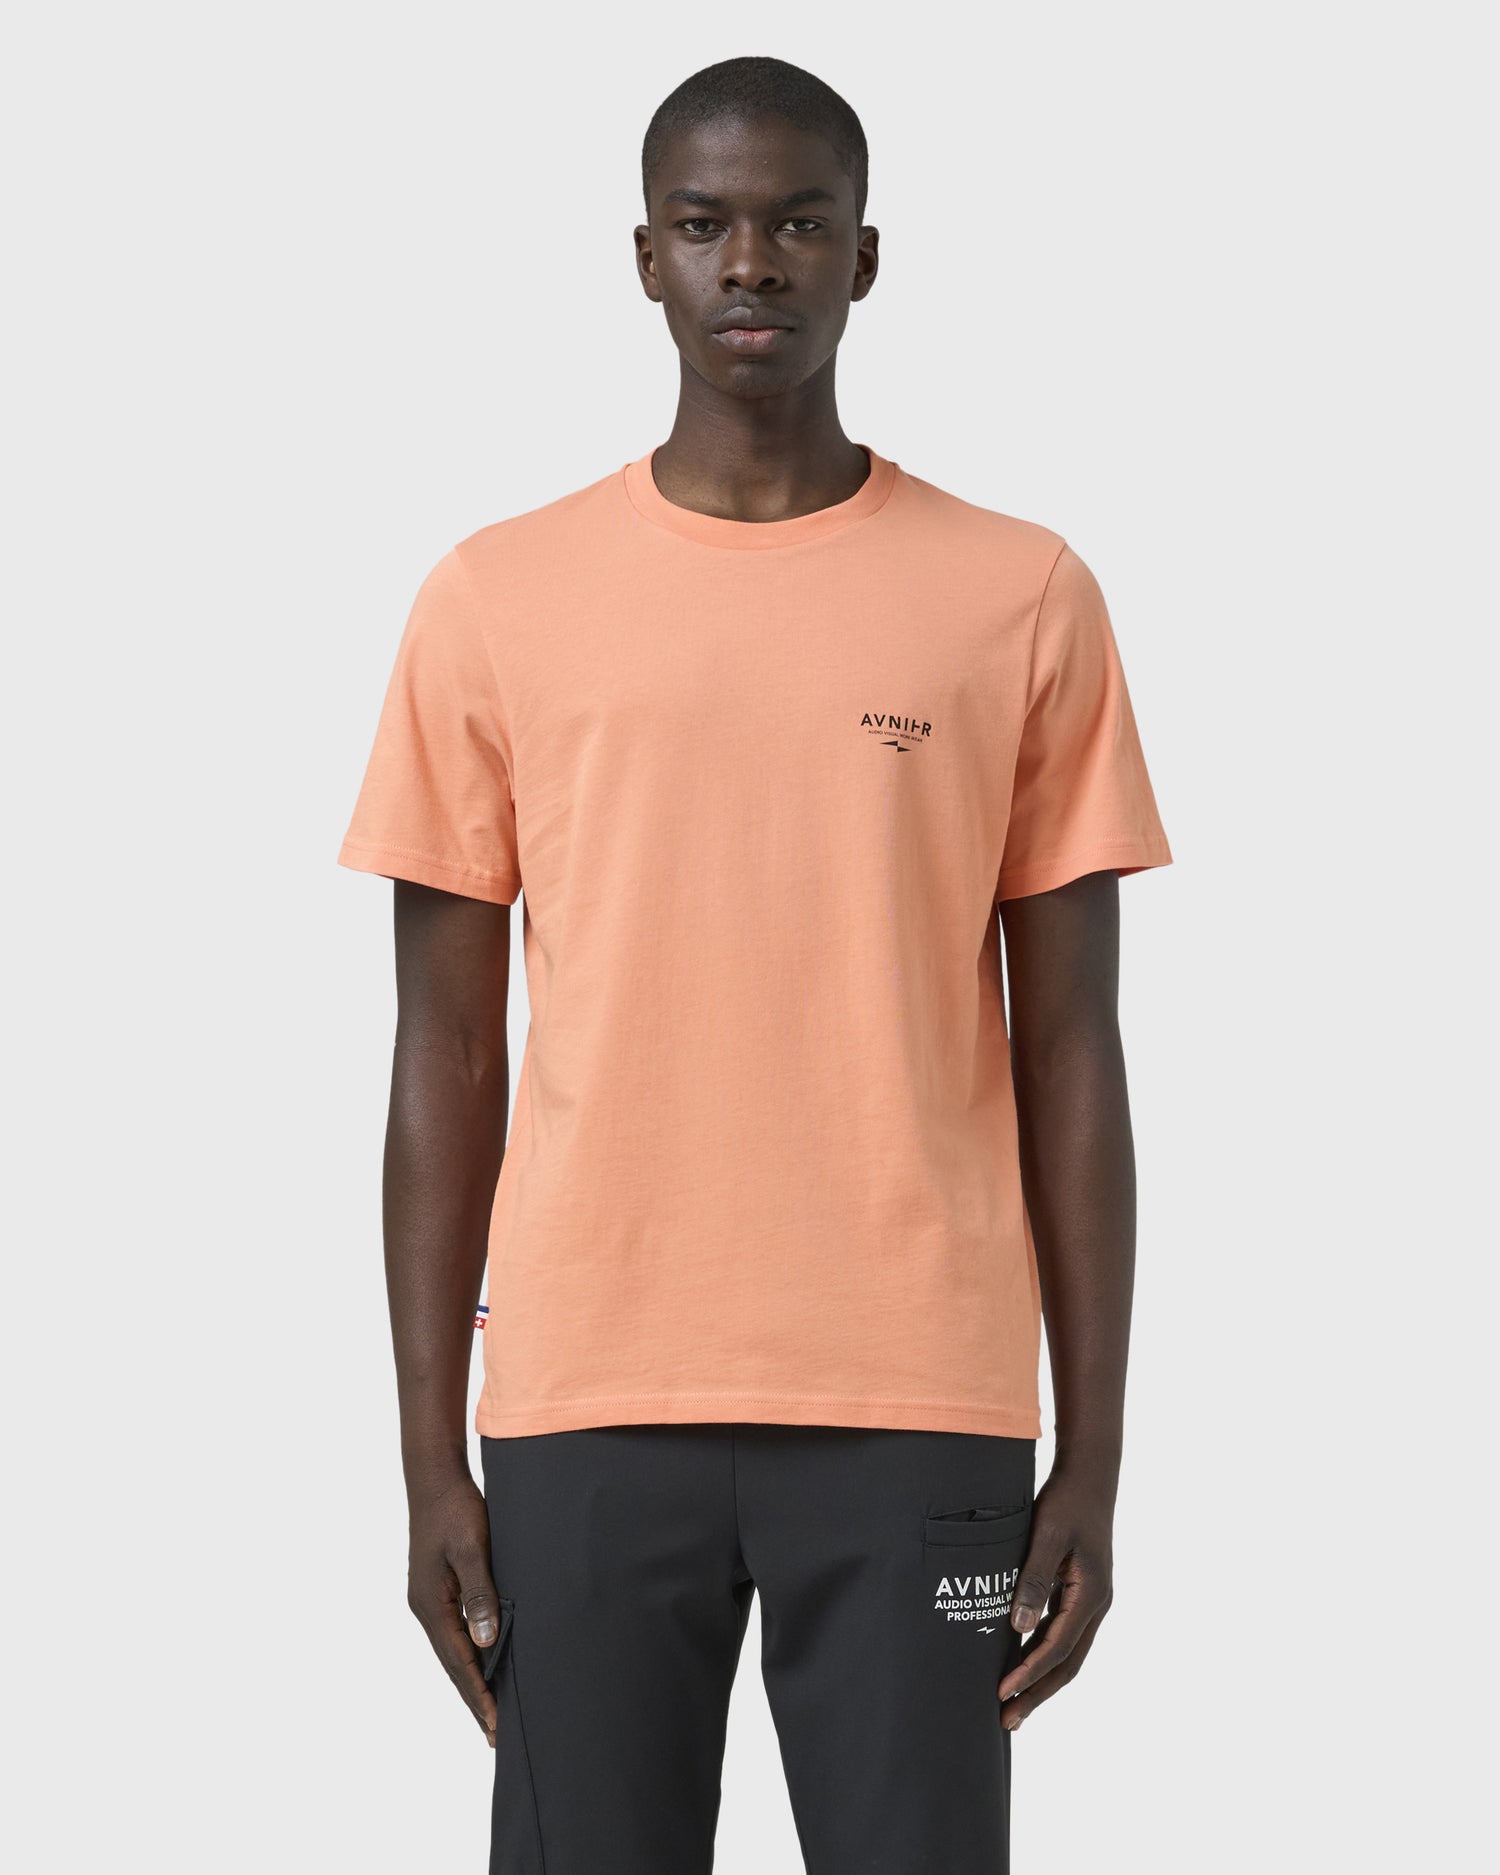 t-shirt-source-vertical-orange-avnier-avnir-2-silhouette-face - Orange vibrant